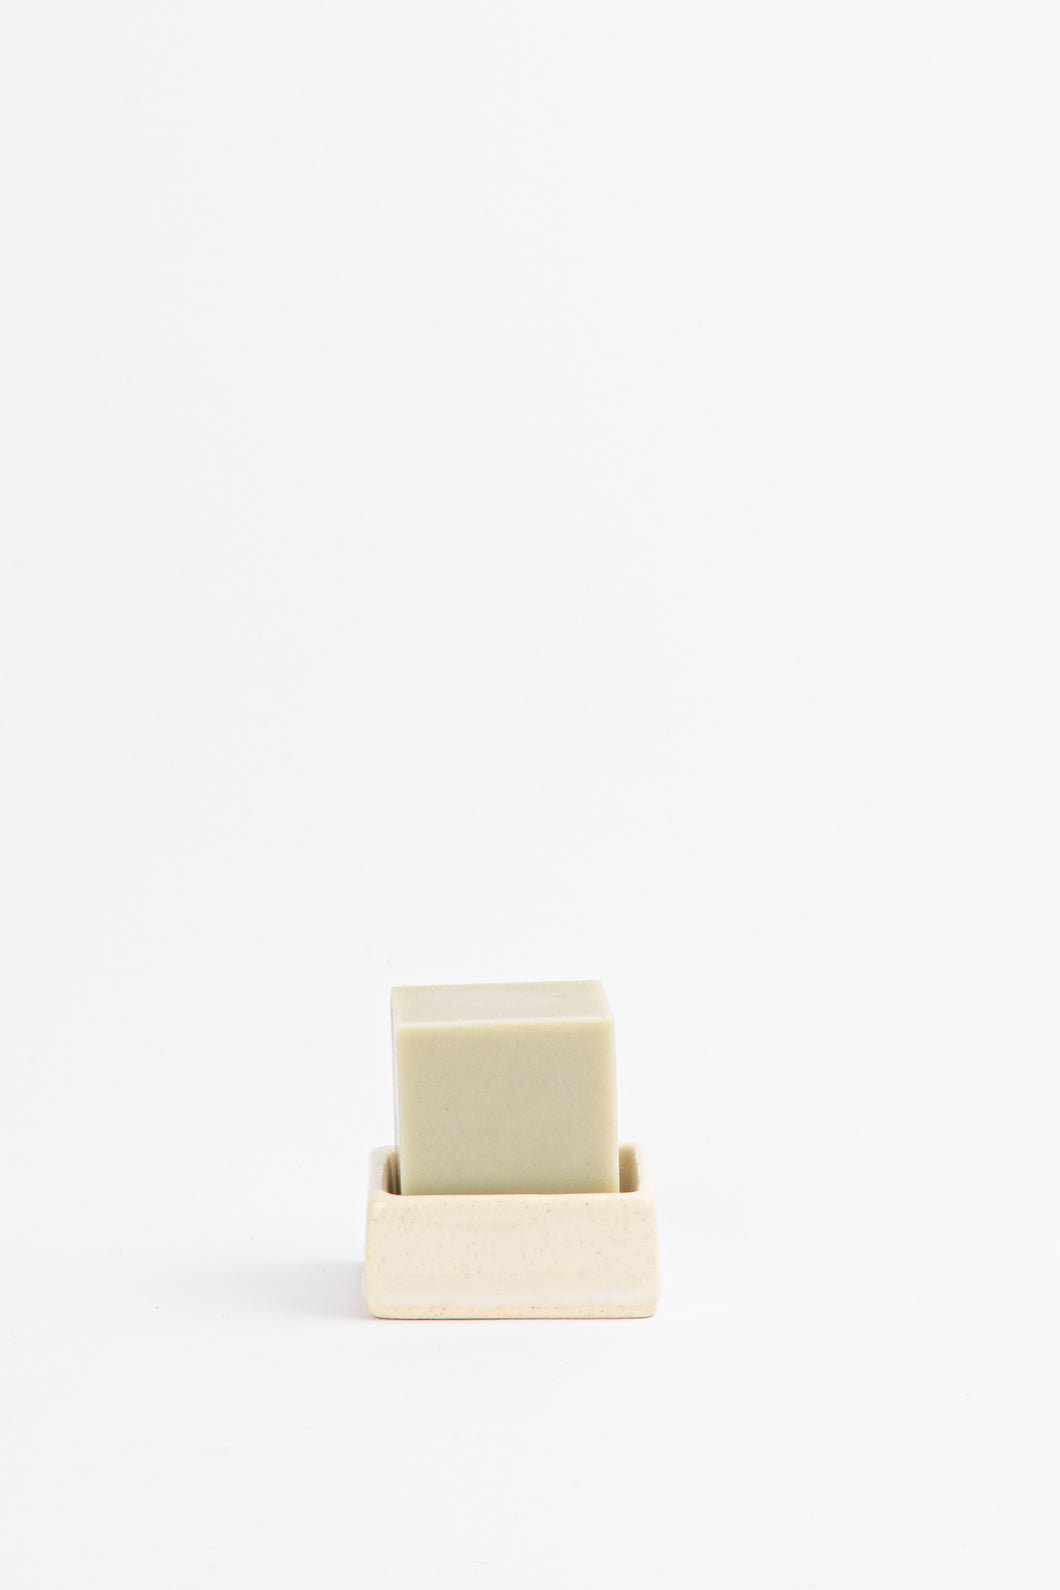 Square Soap Dish – Cream